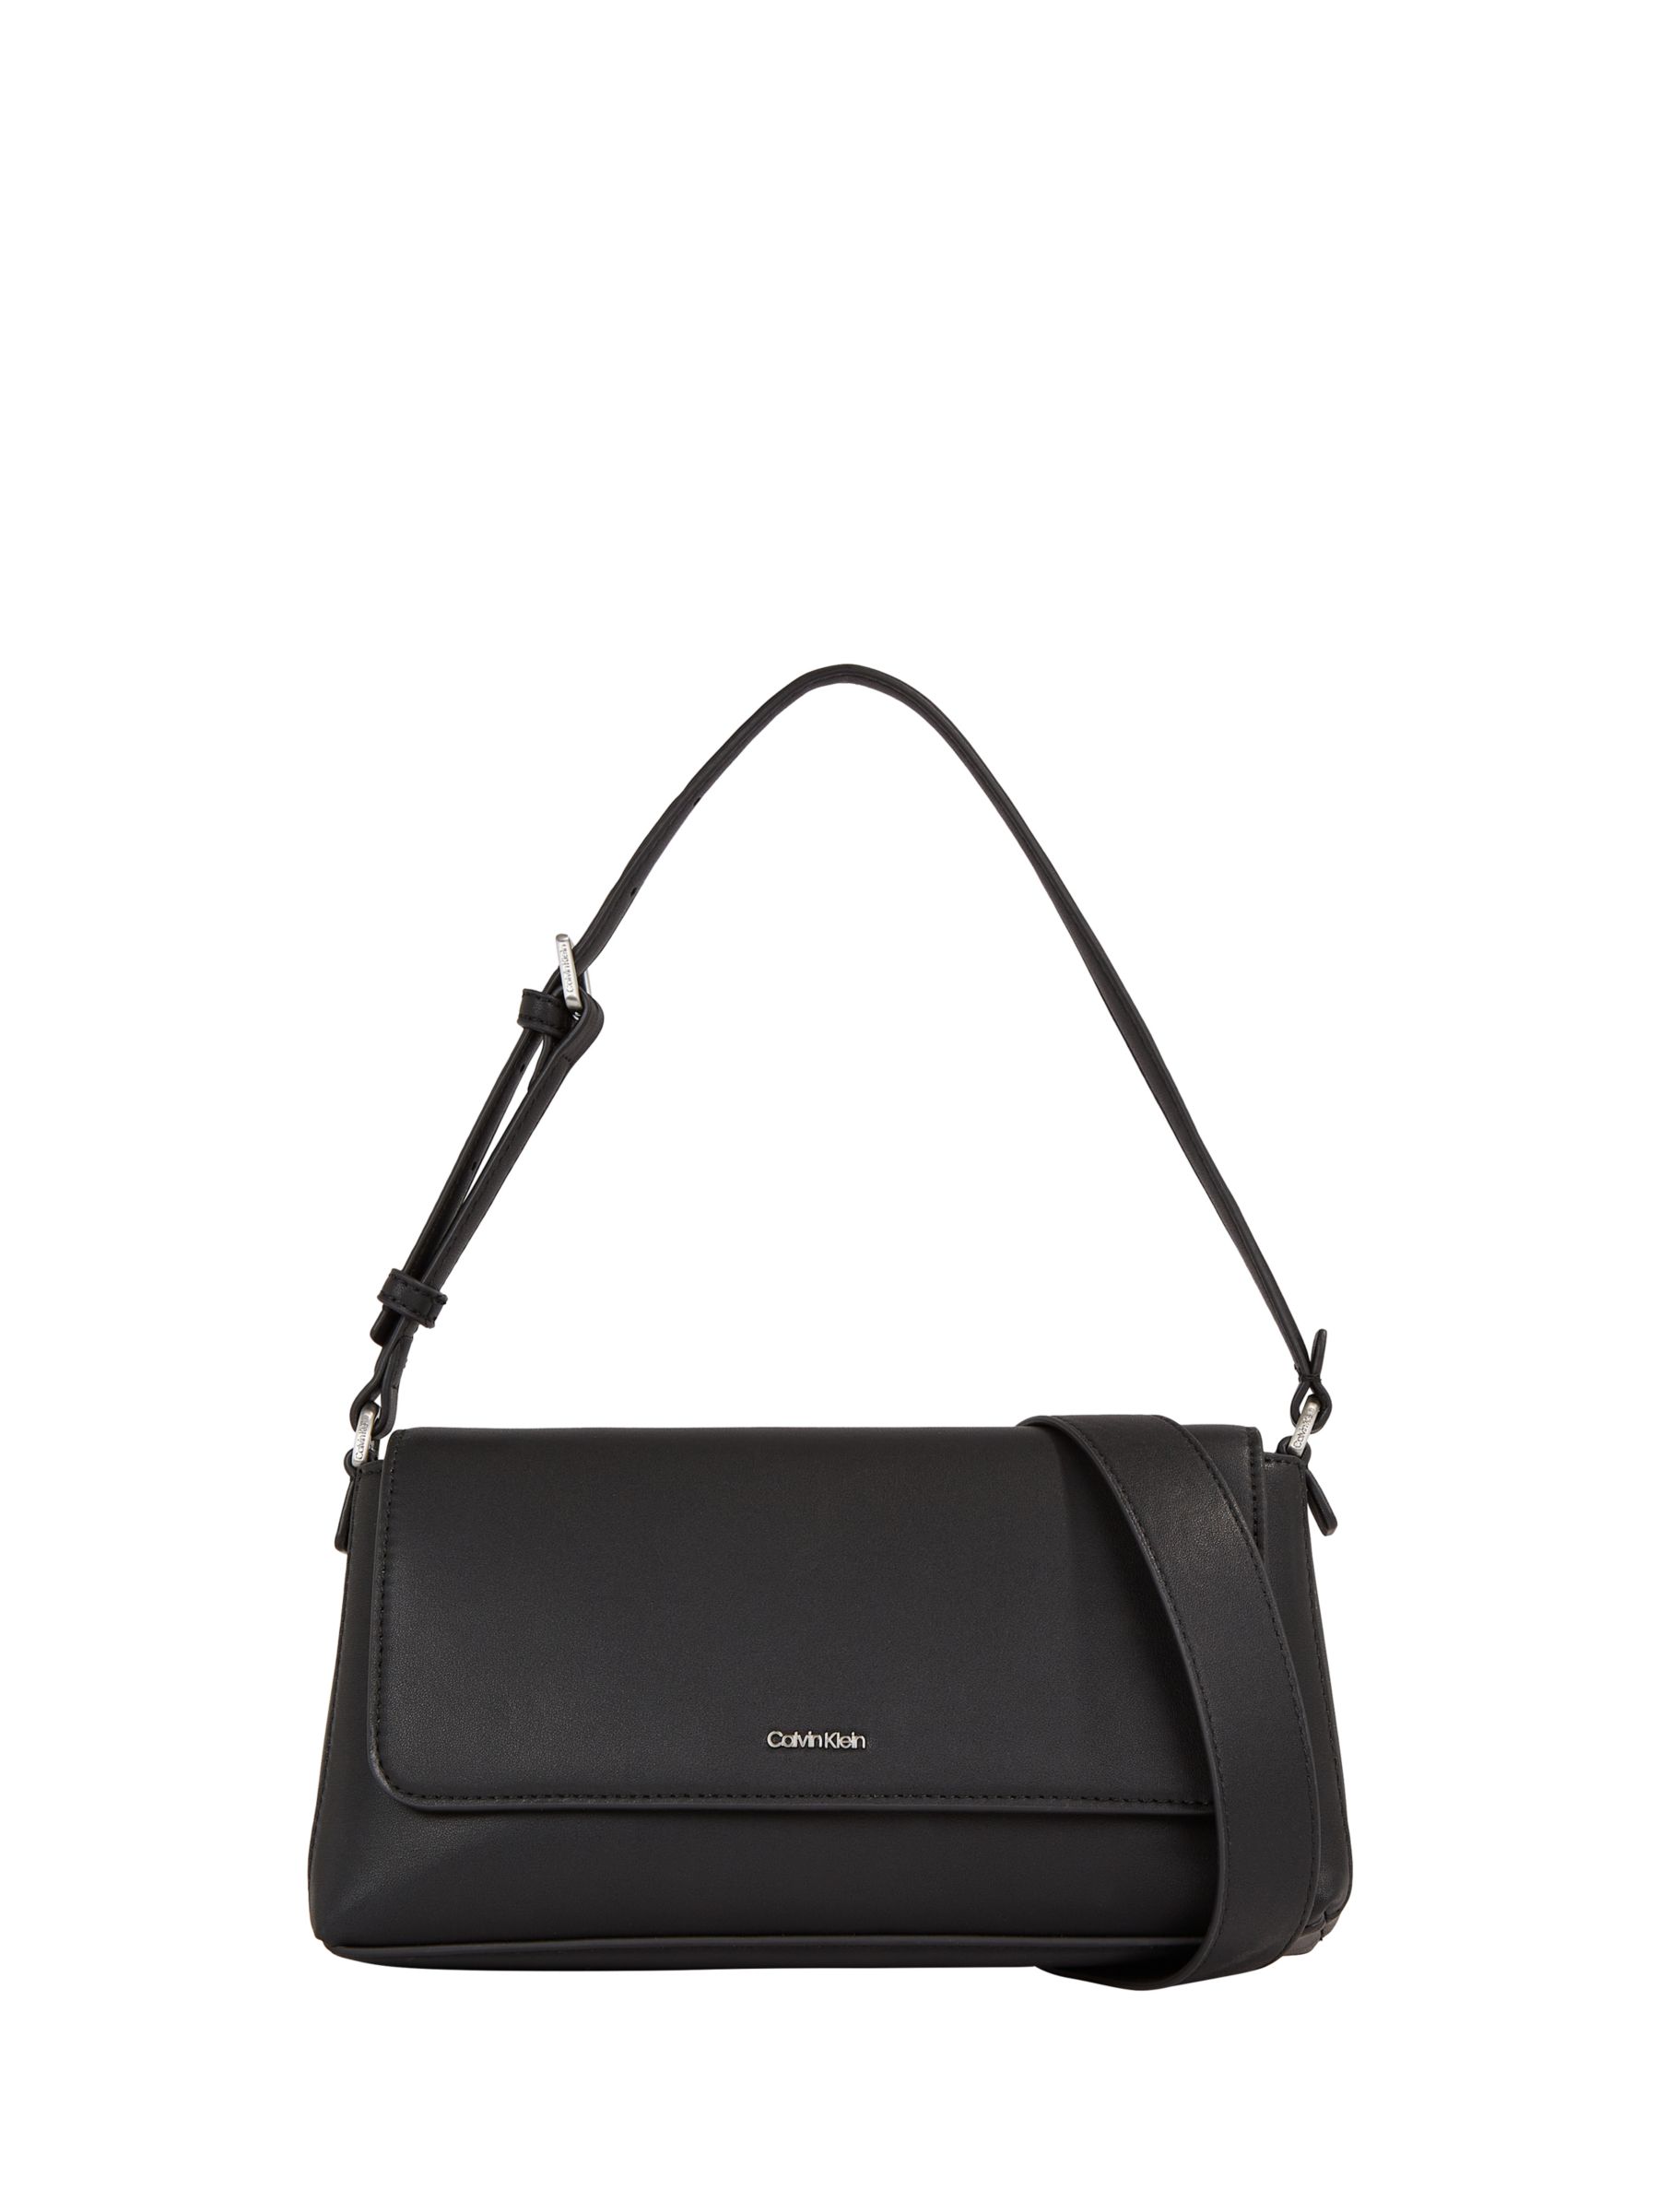 Handbags, Bags & Purses - Calvin Klein, Handbags